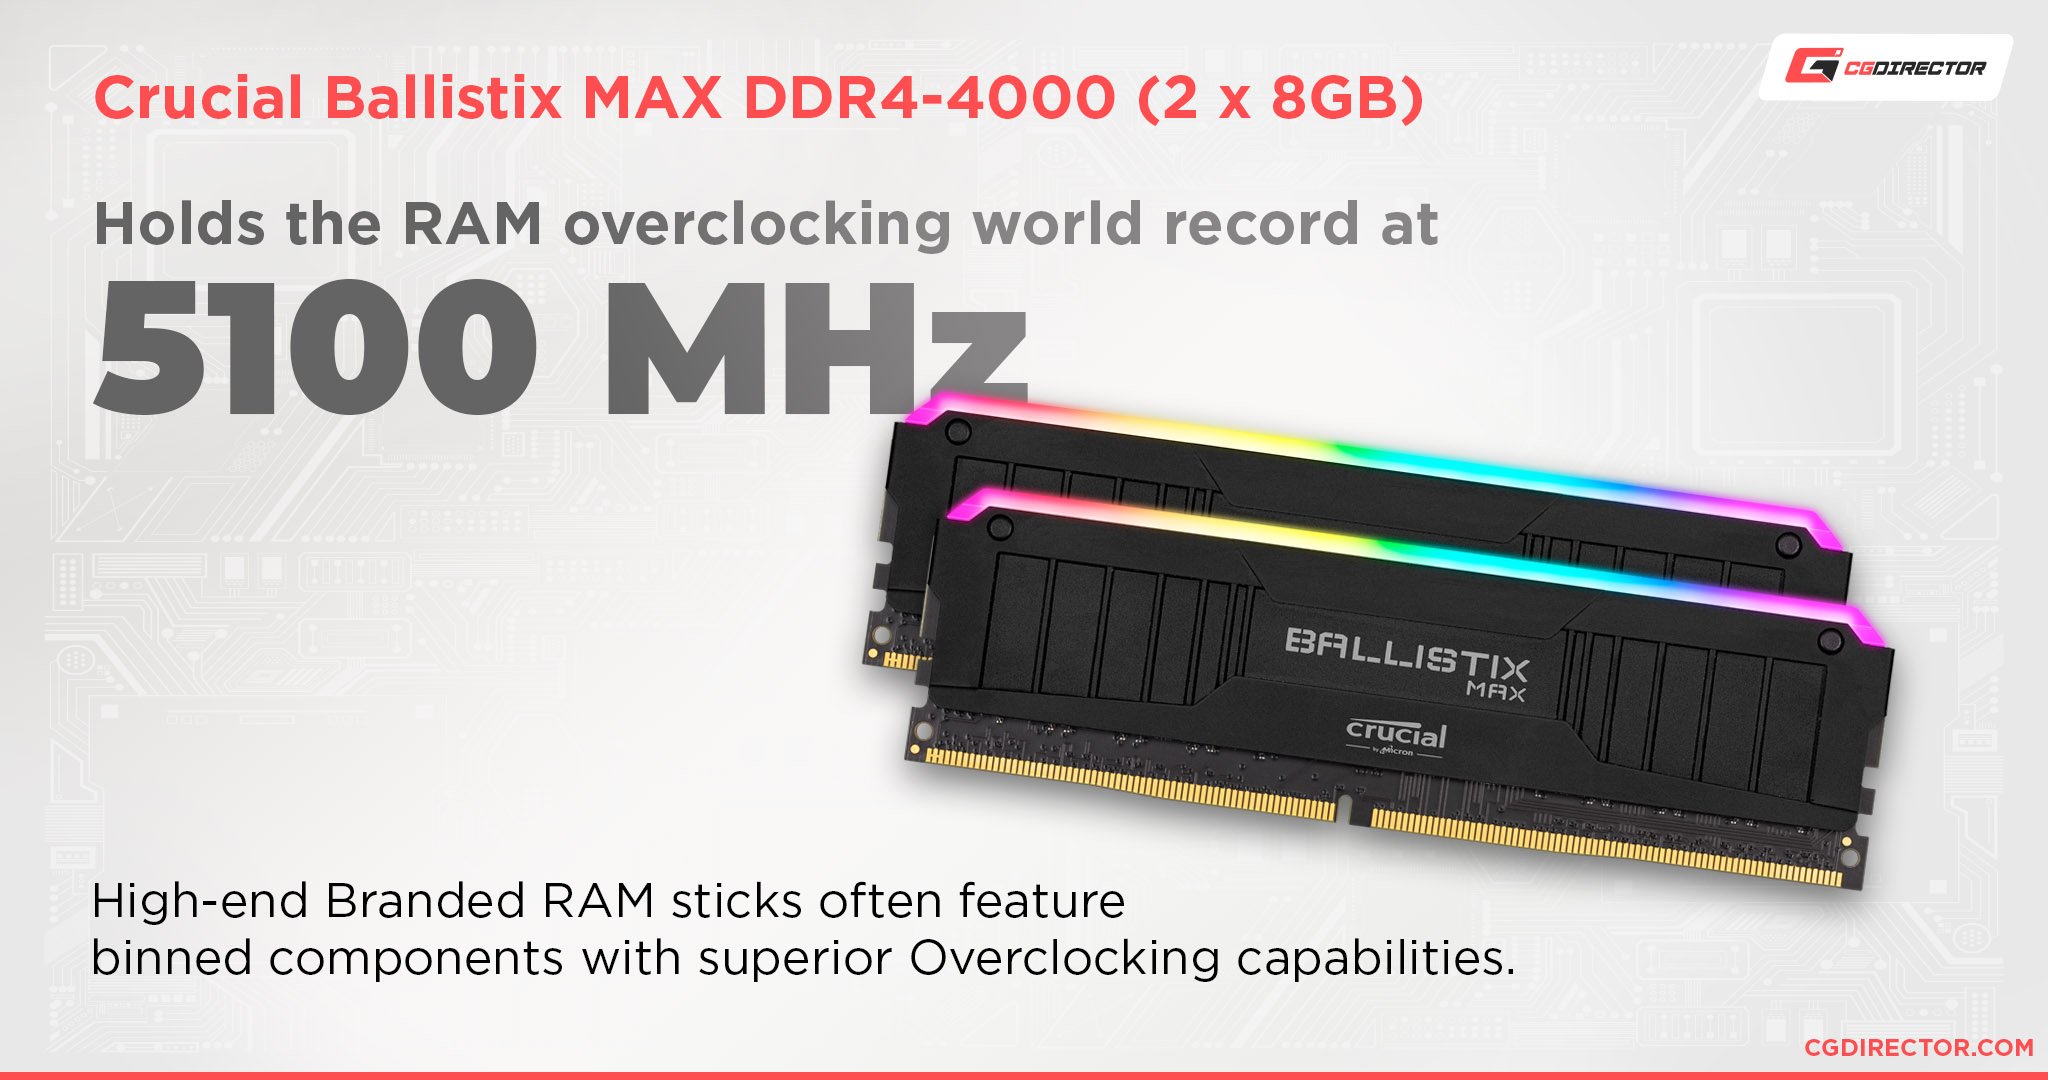 Higher-end RAM sticks